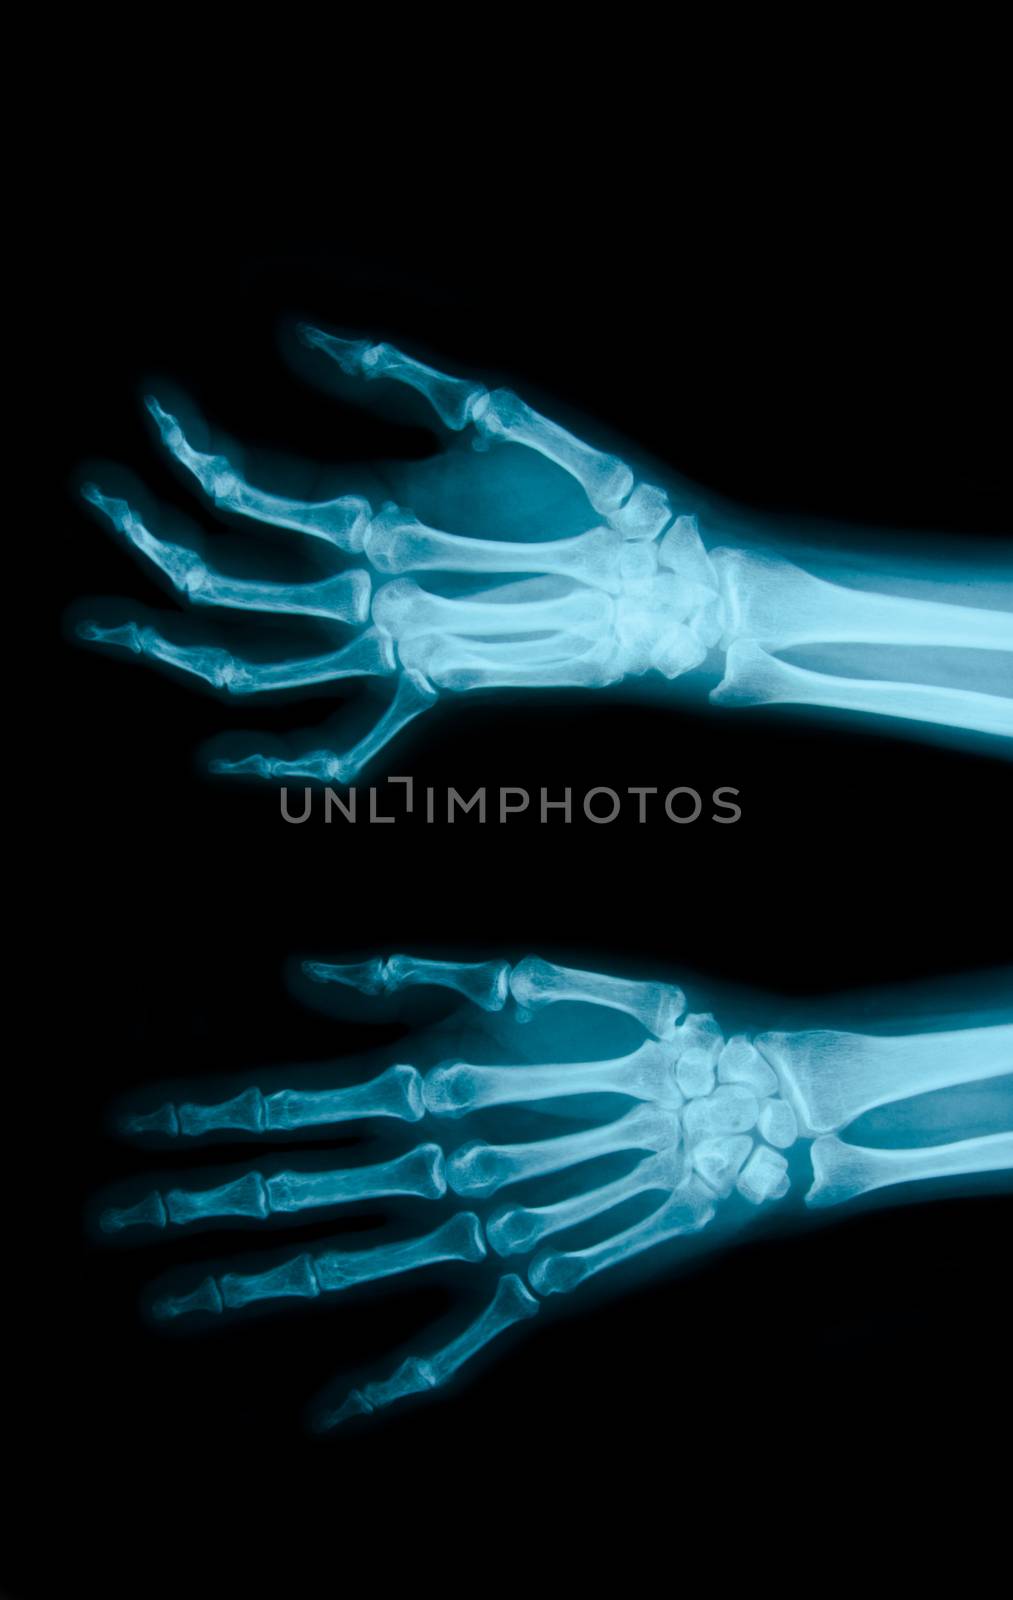 Film X-ray show bones by Gamjai